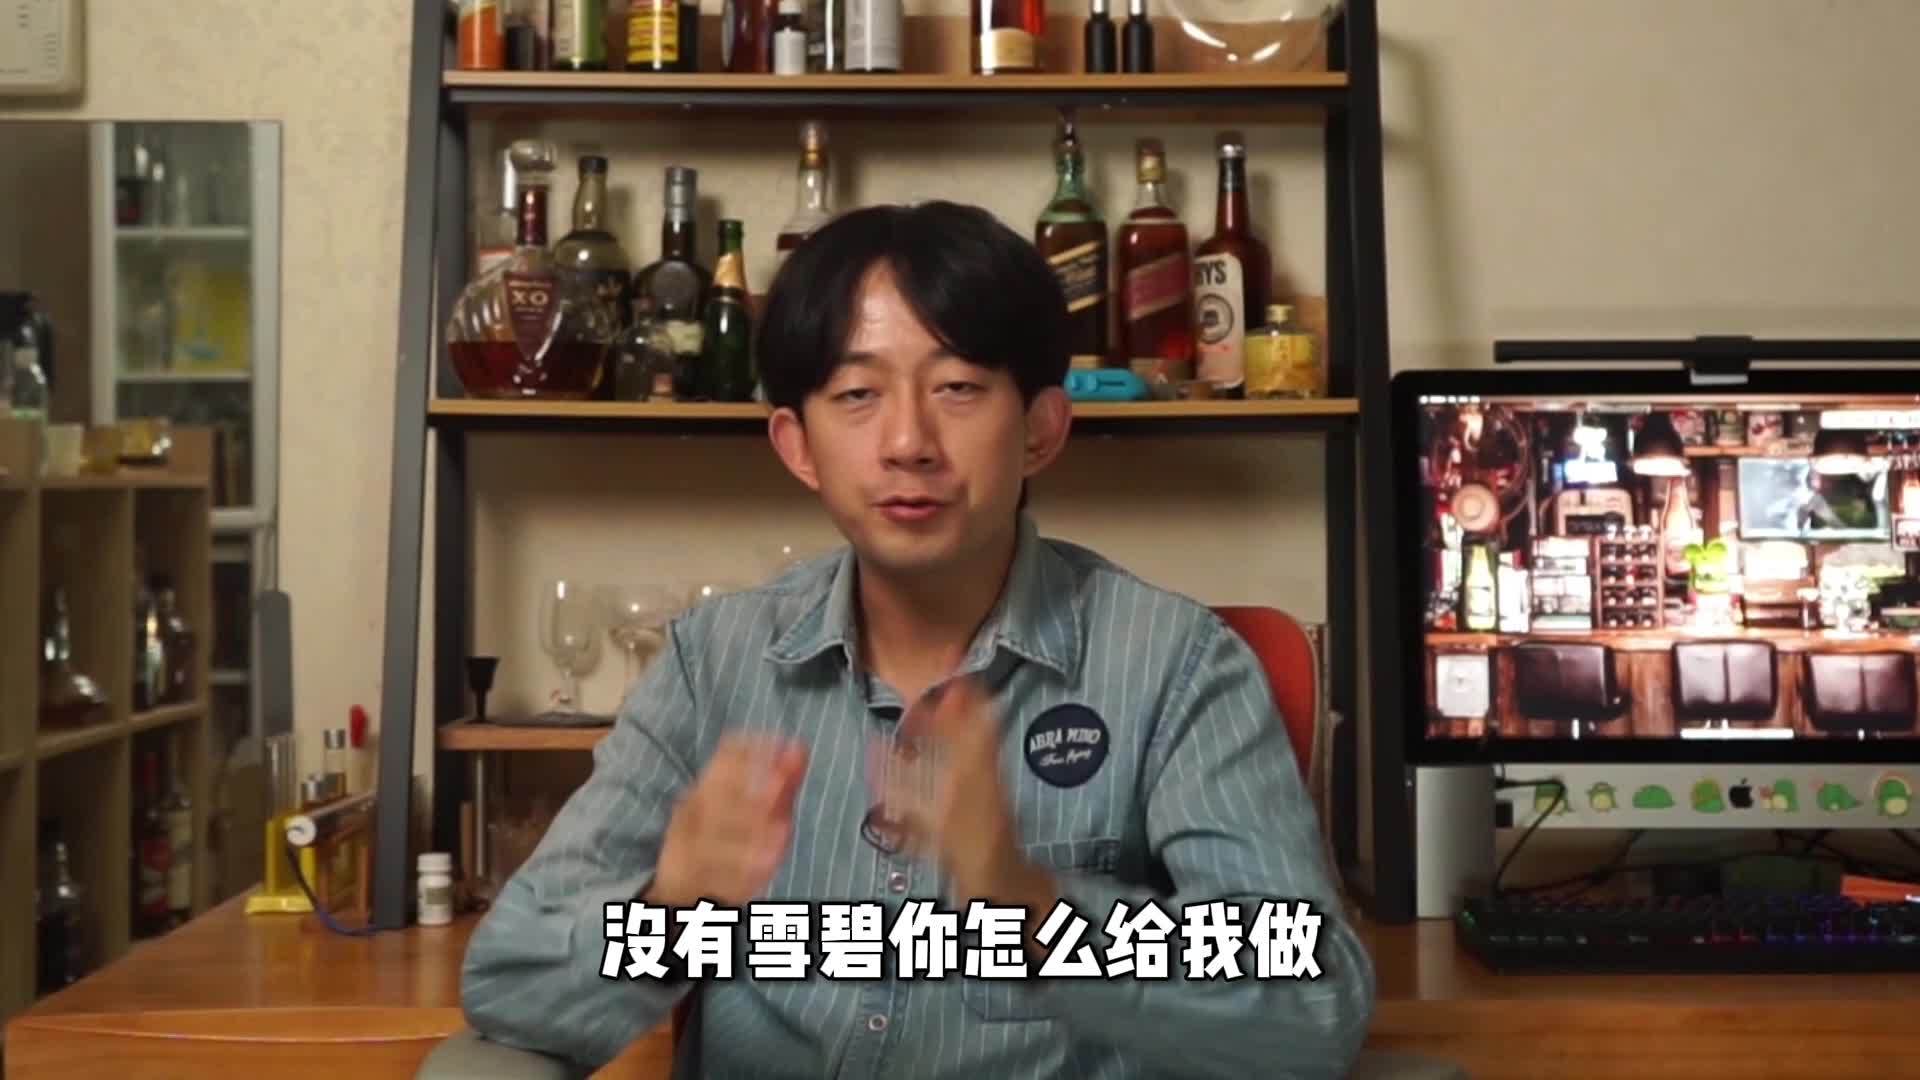 网络热门鸡尾酒视频鉴定